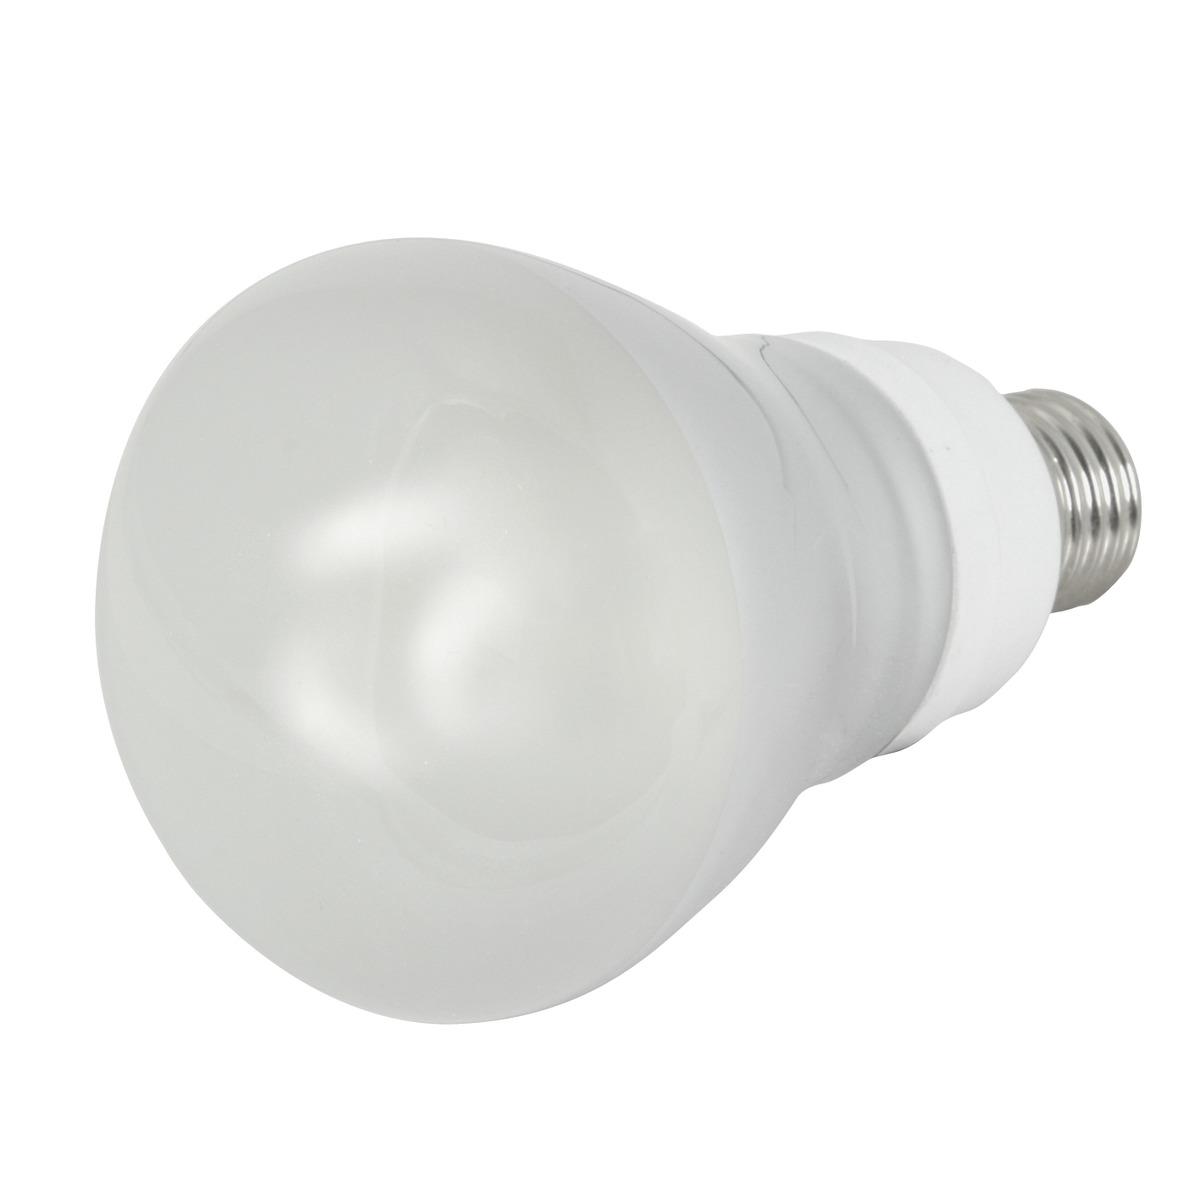 Ampoule à économie d'énergie réflecteur E27 - 14.5 x 8 x 19.5 cm - Blanc